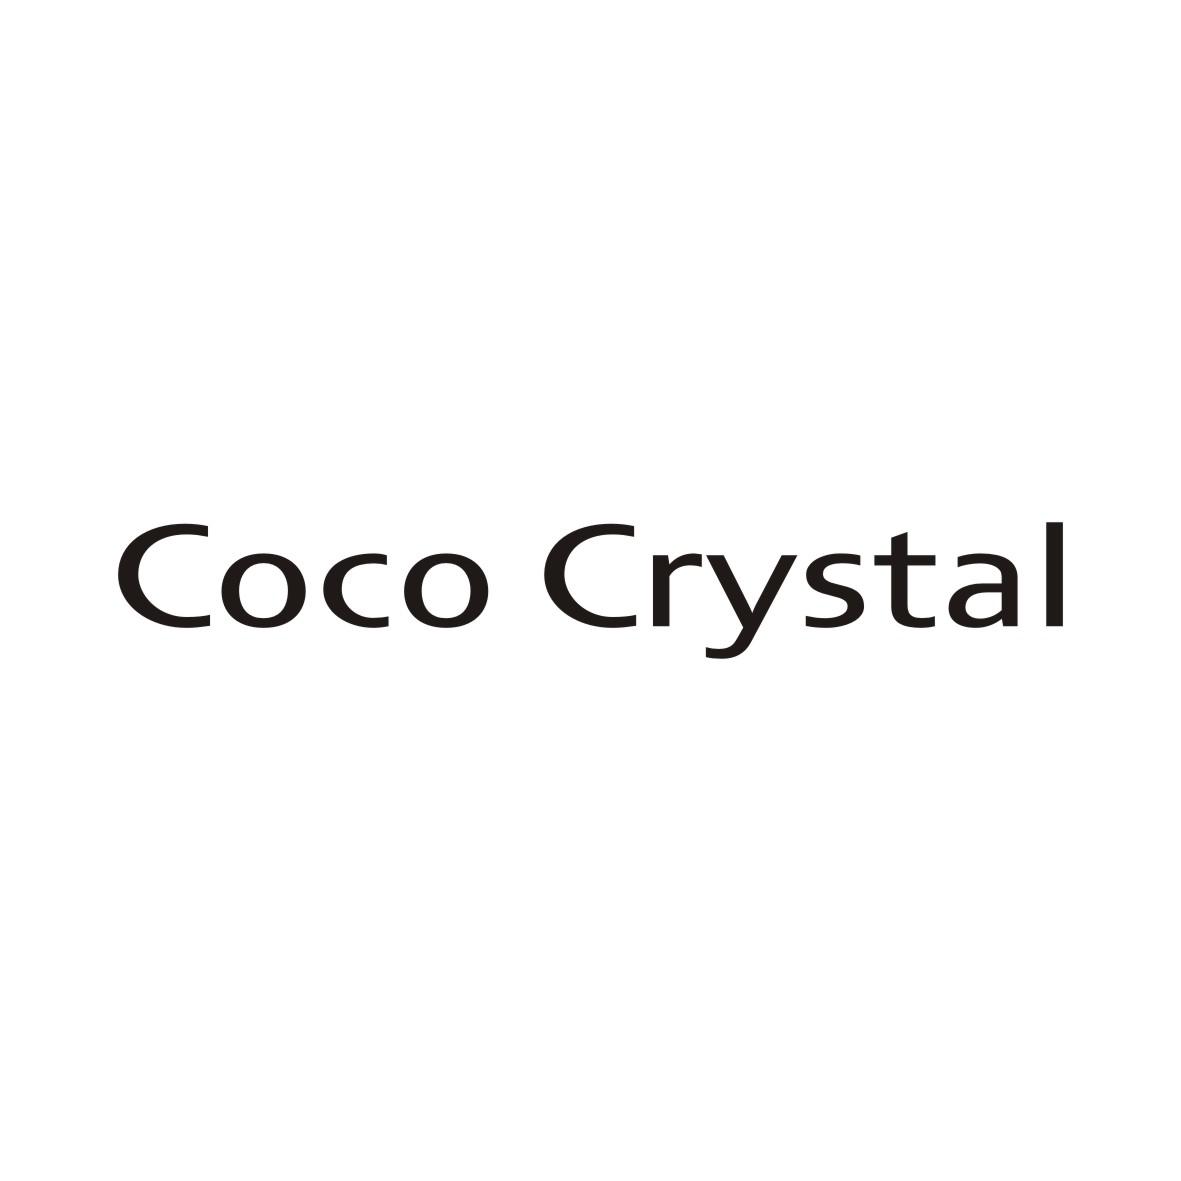 COCO CRYSTAL